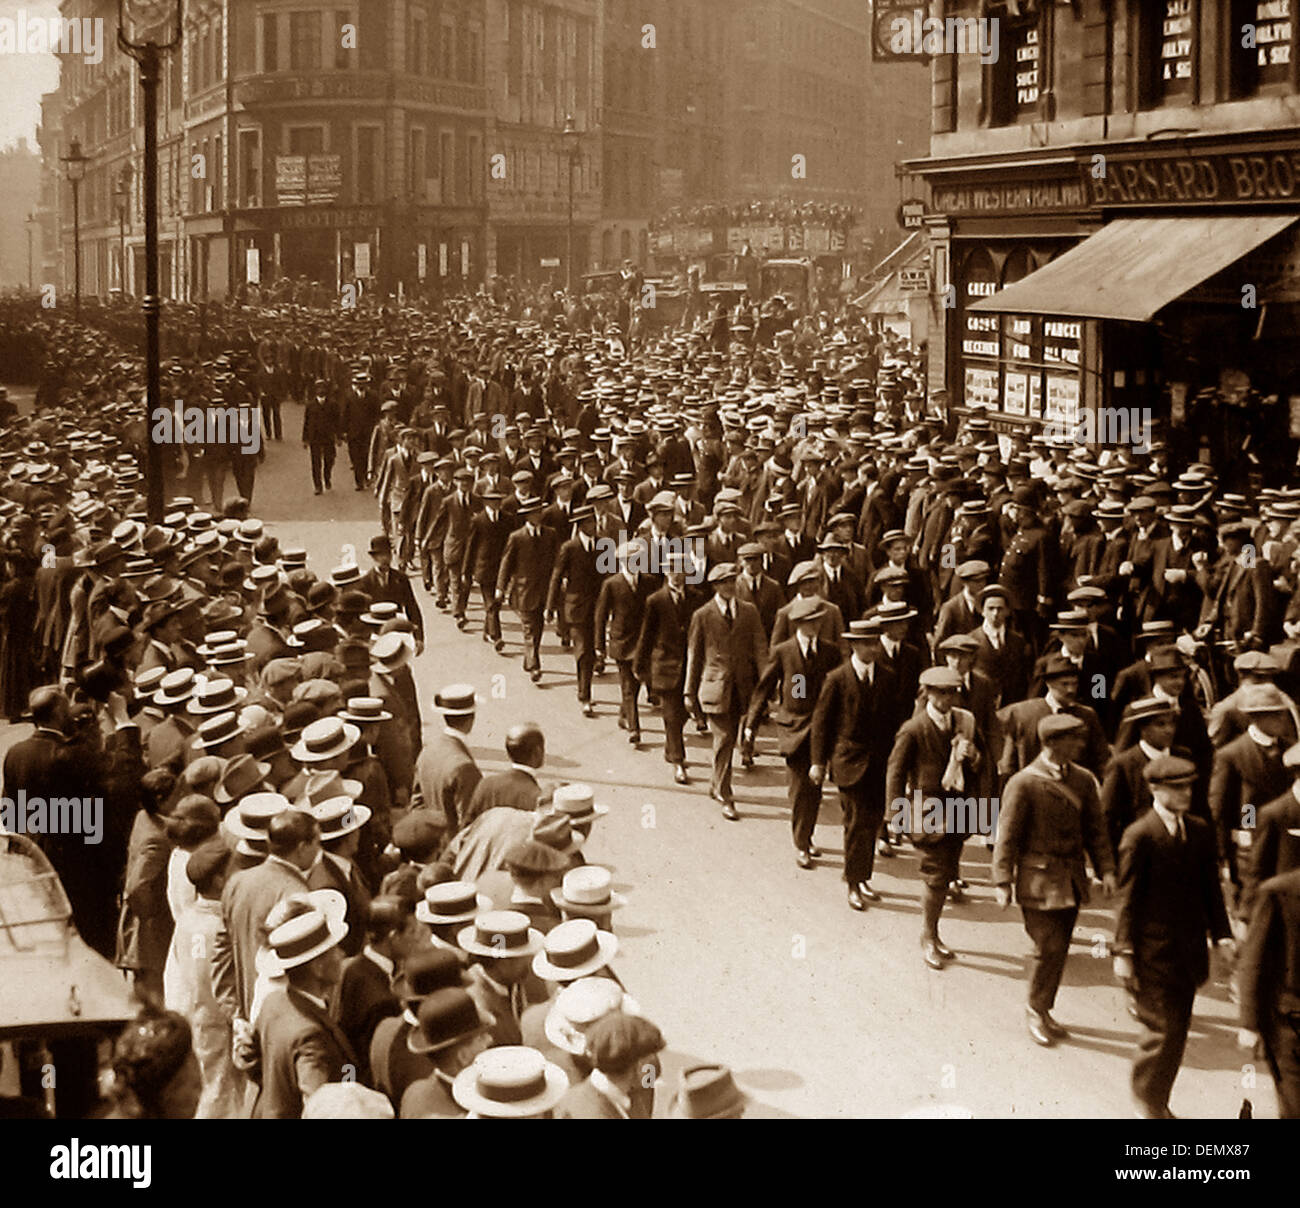 Les nouvelles recrues en parade pendant WW1 probablement Londres Banque D'Images